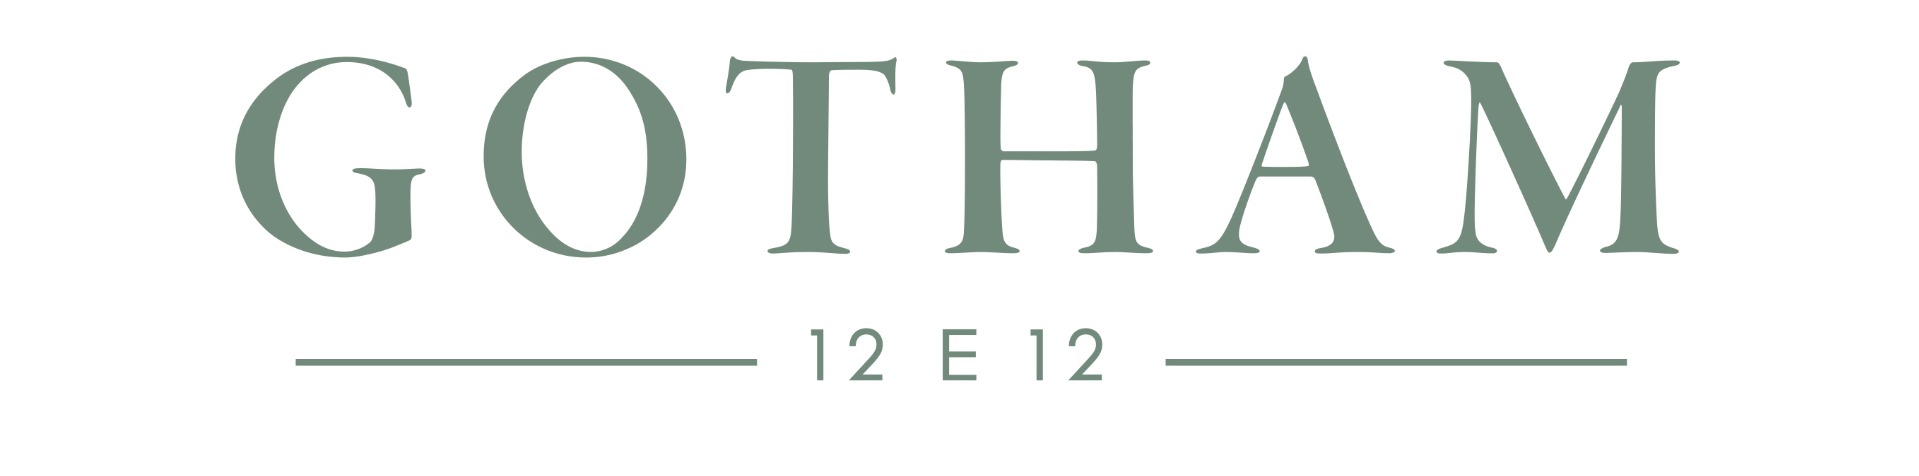 gotham restaurant logo